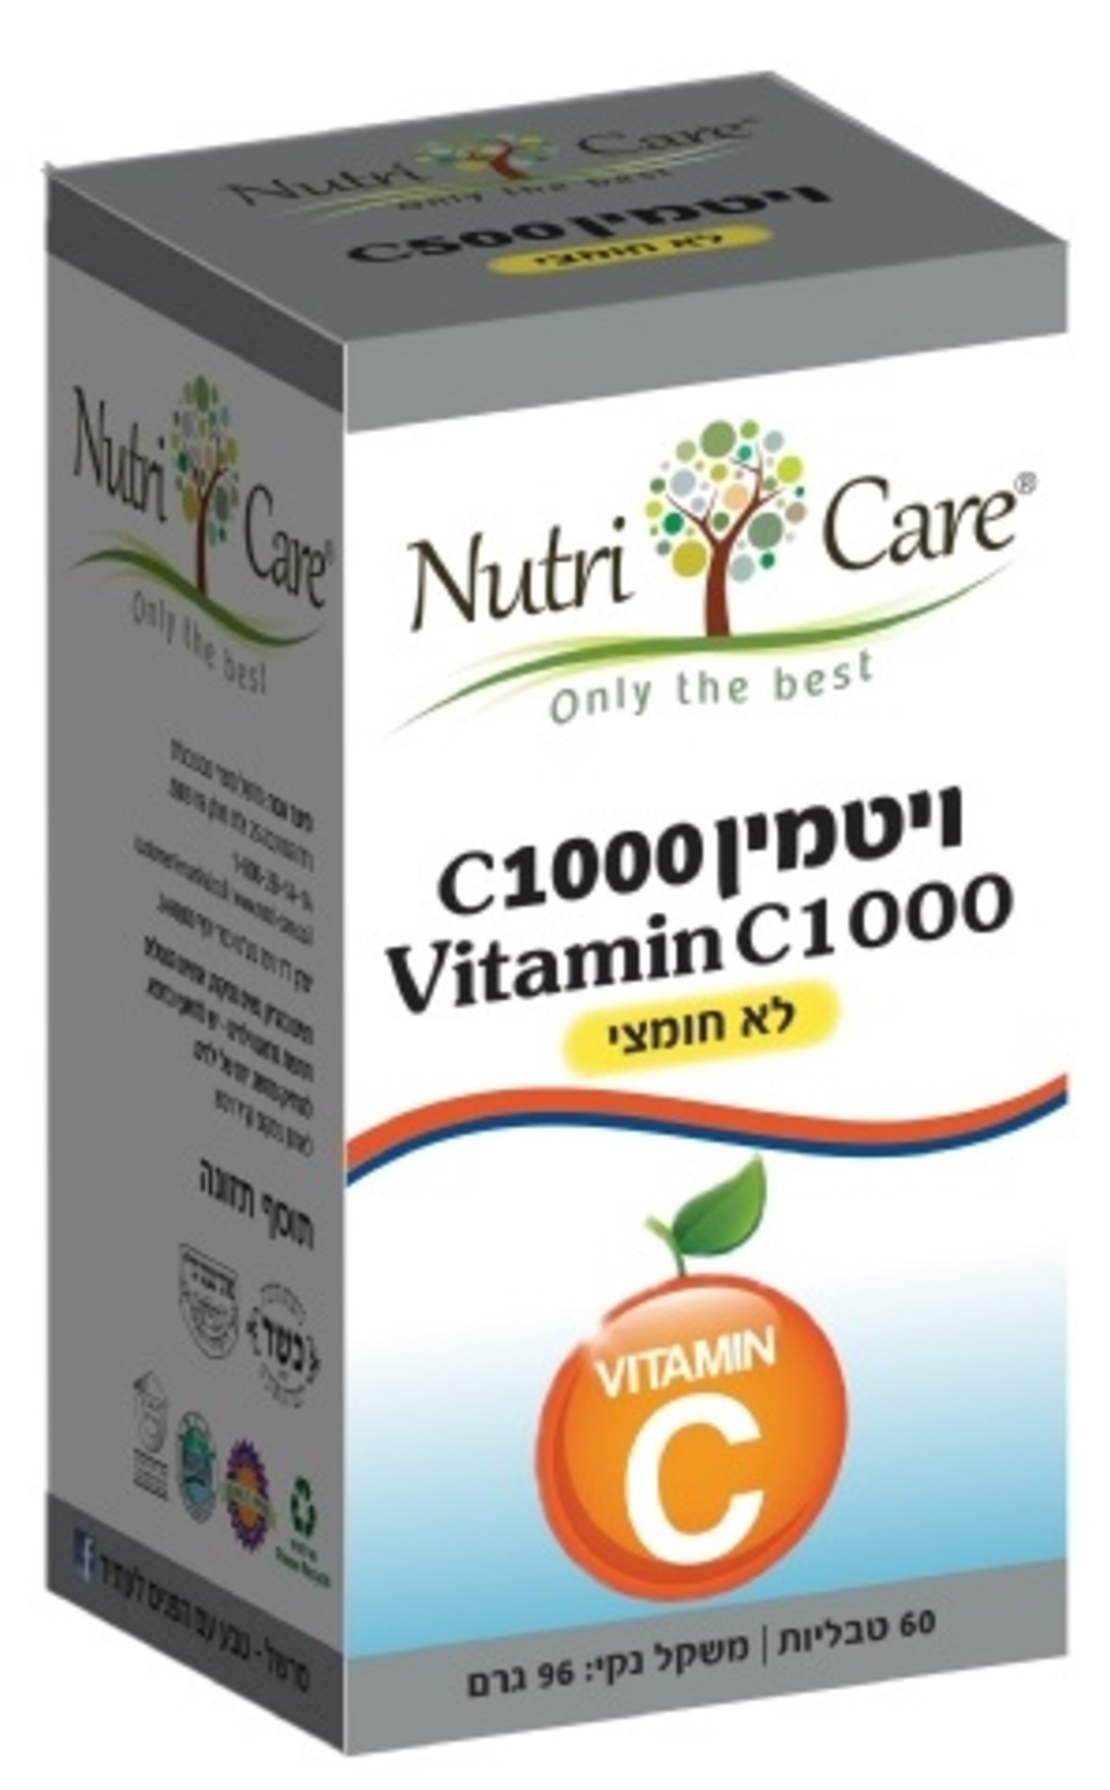 נוטרי קר - ויטמין C1000 לא חומצי טבליות Vitamin C1000 Tablets